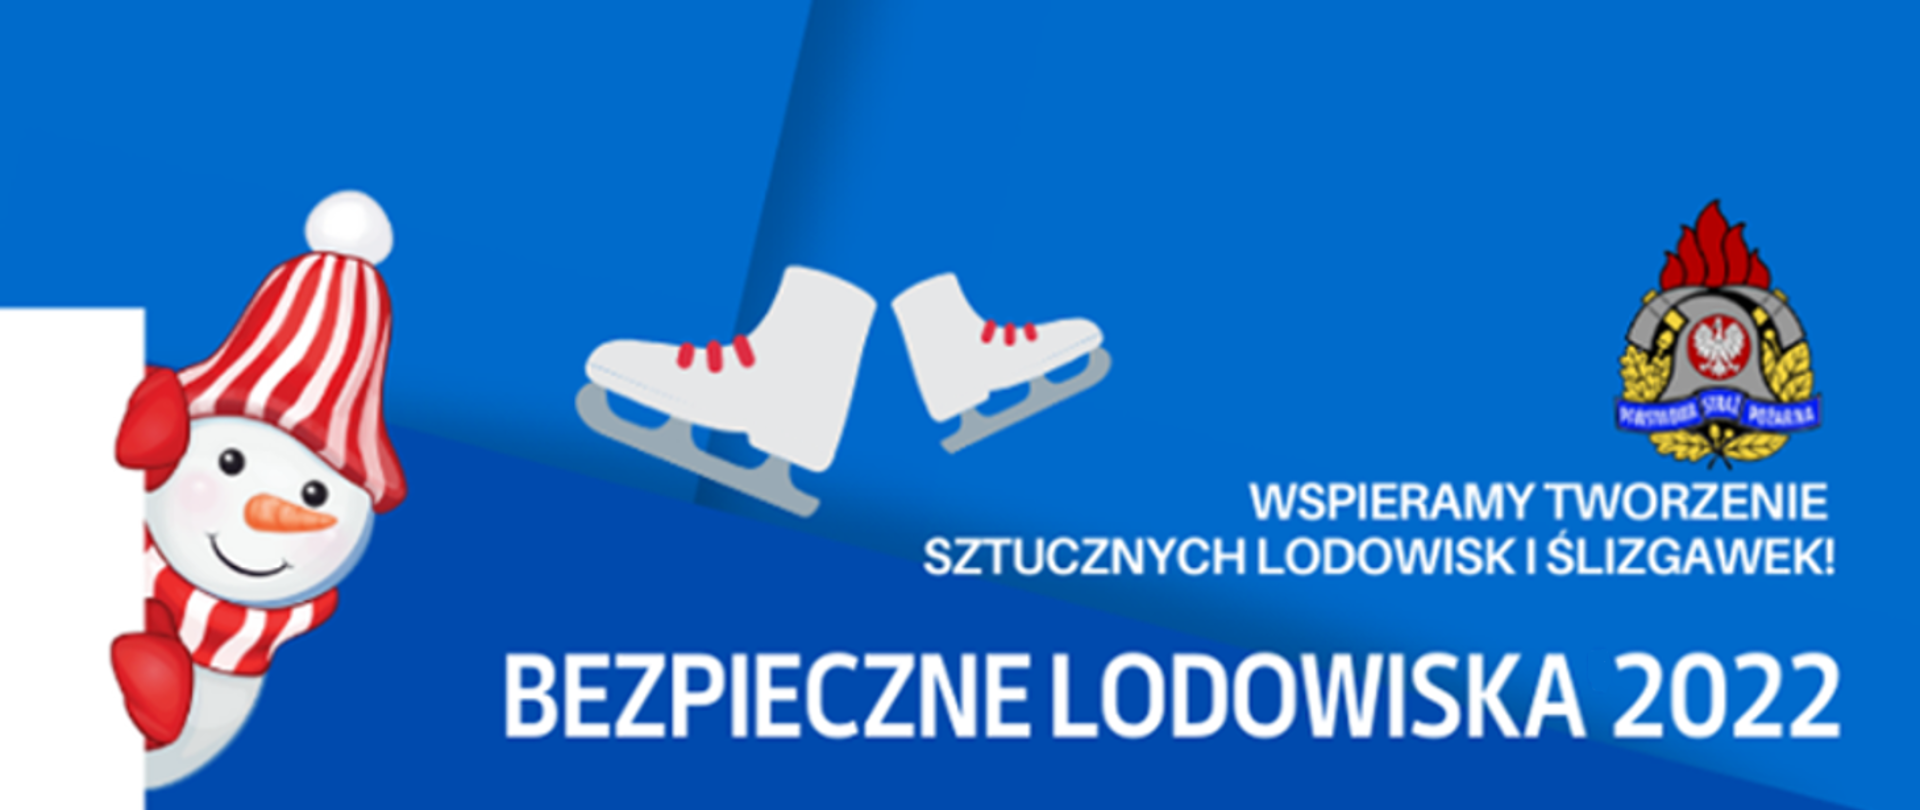 Zdjęcie przedstawia plakat, gdzie na niebieskim tle widać 2 sztuki łyżew, logo PSP, bałwana w czerwonej czapce oraz napis "wspieramy tworzenie sztucznych lodowisk i ślizgawek bezpieczne lodowiska 2022"